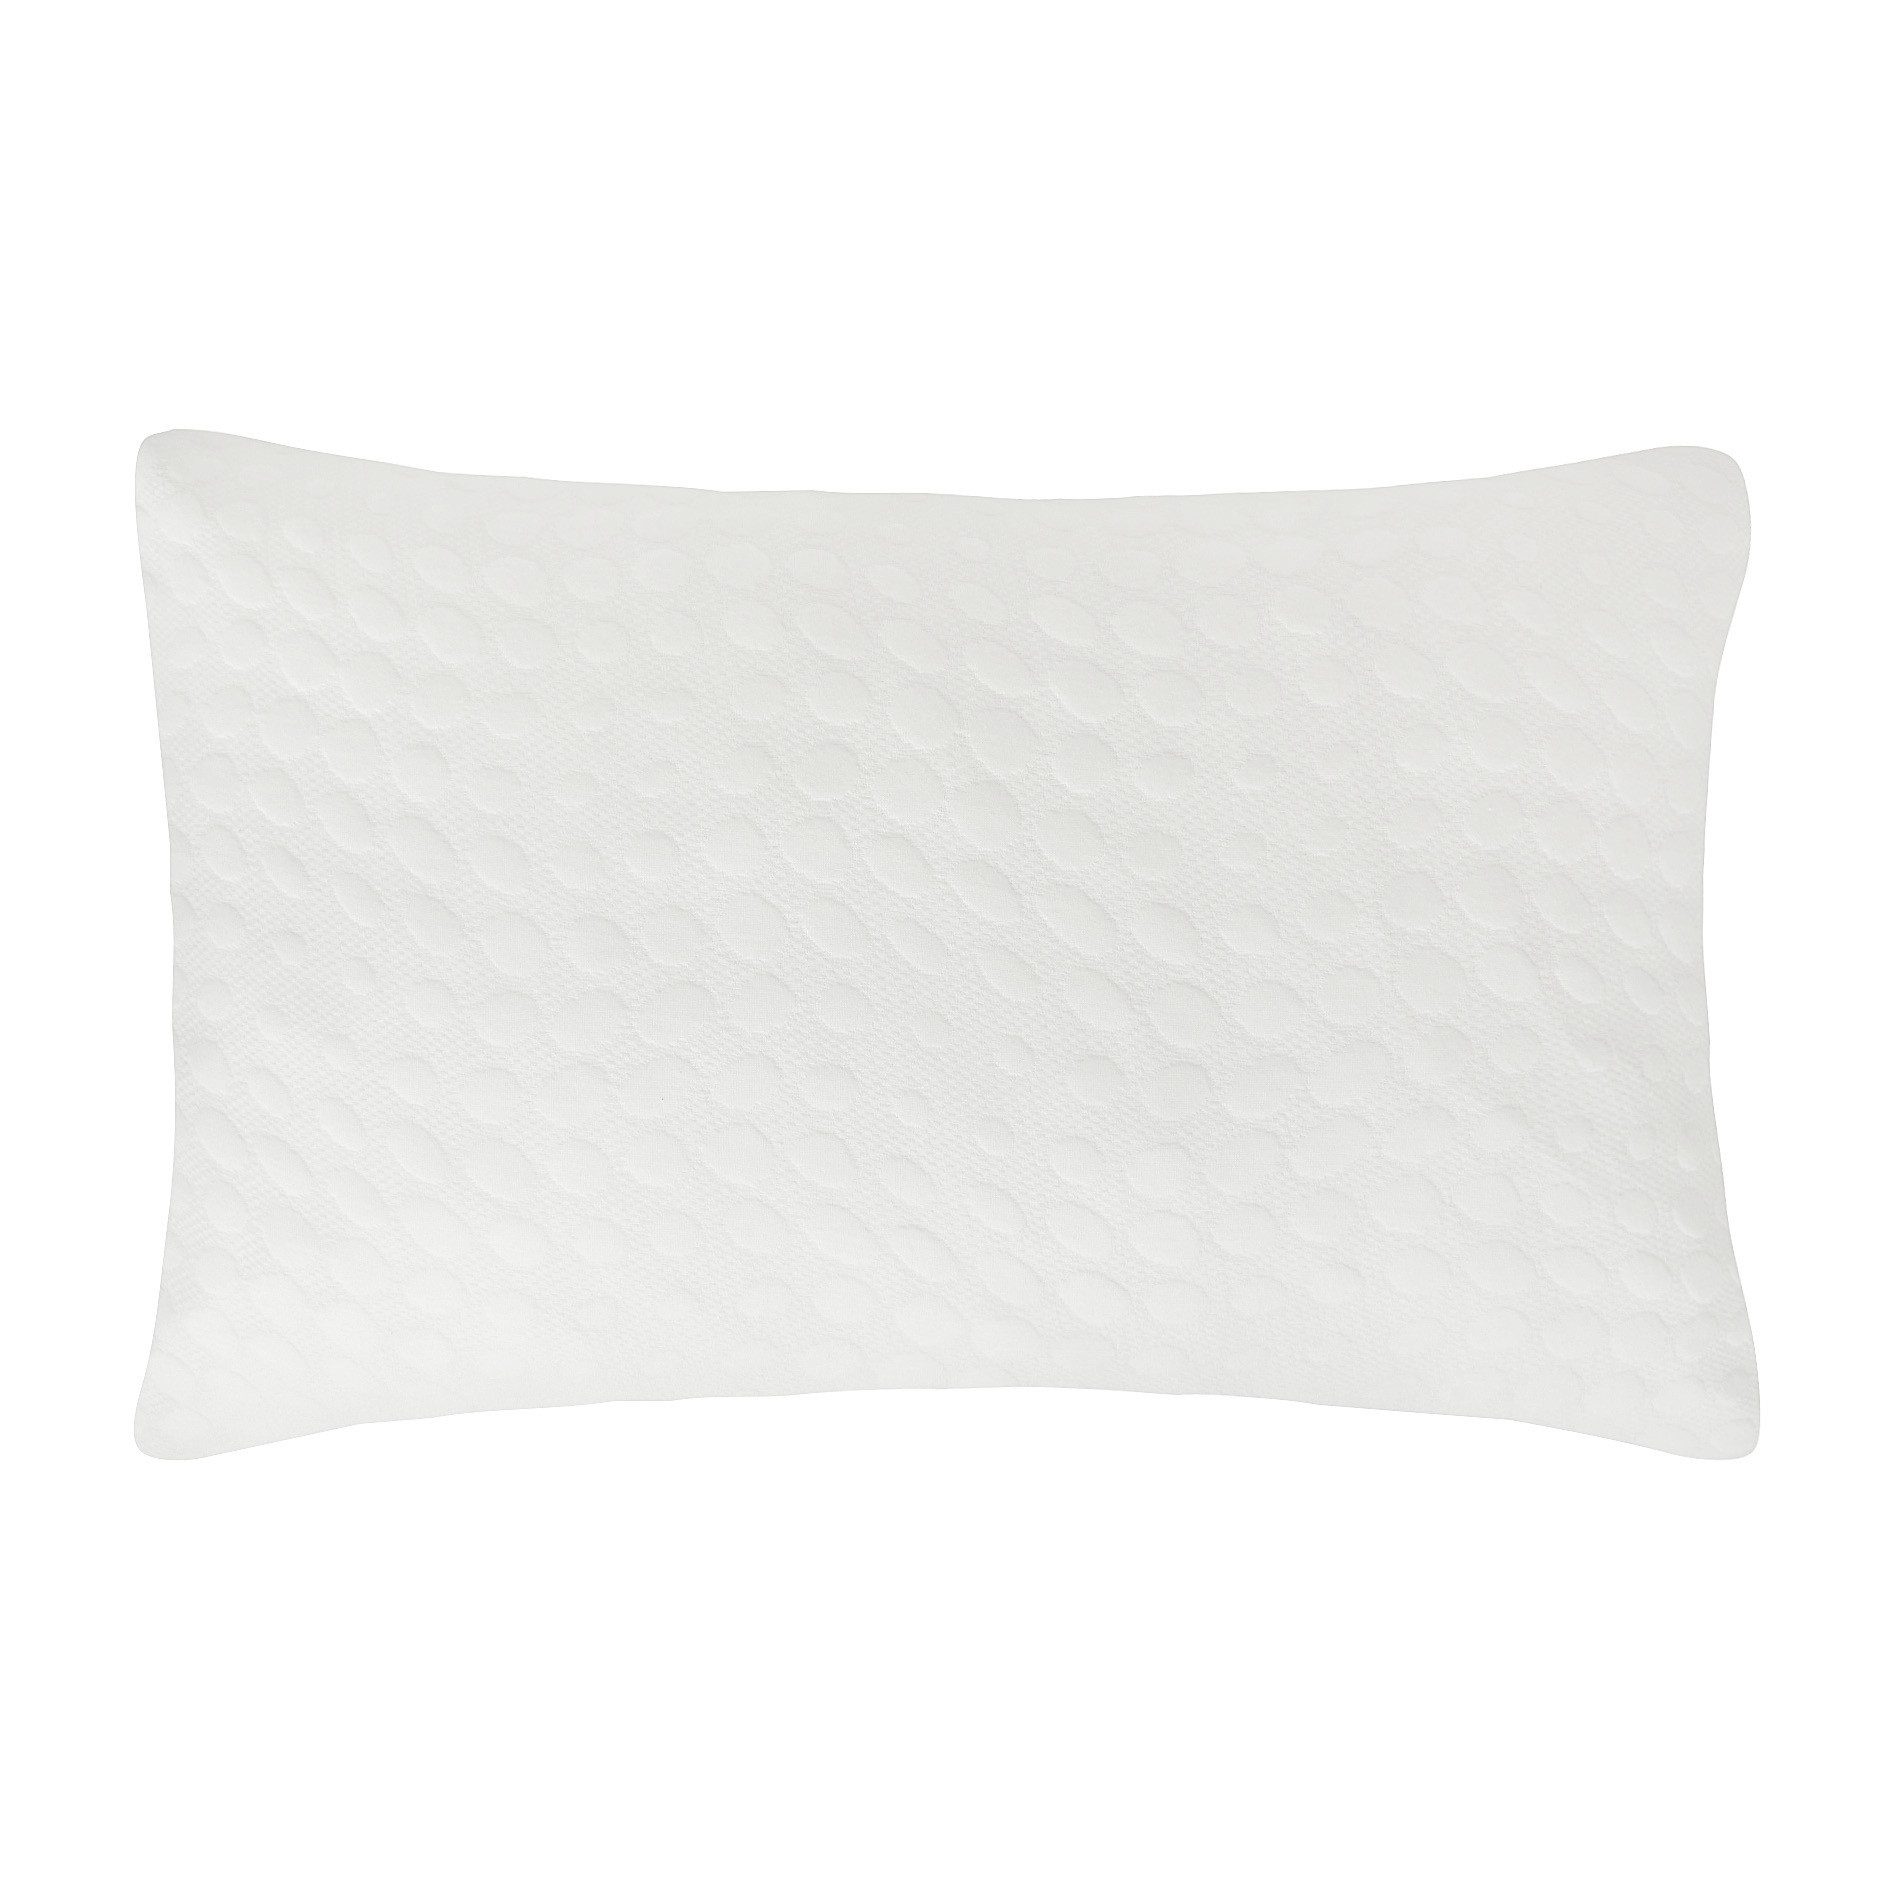 ThreelevelÂ® jacquard pillowcase, White, large image number 0